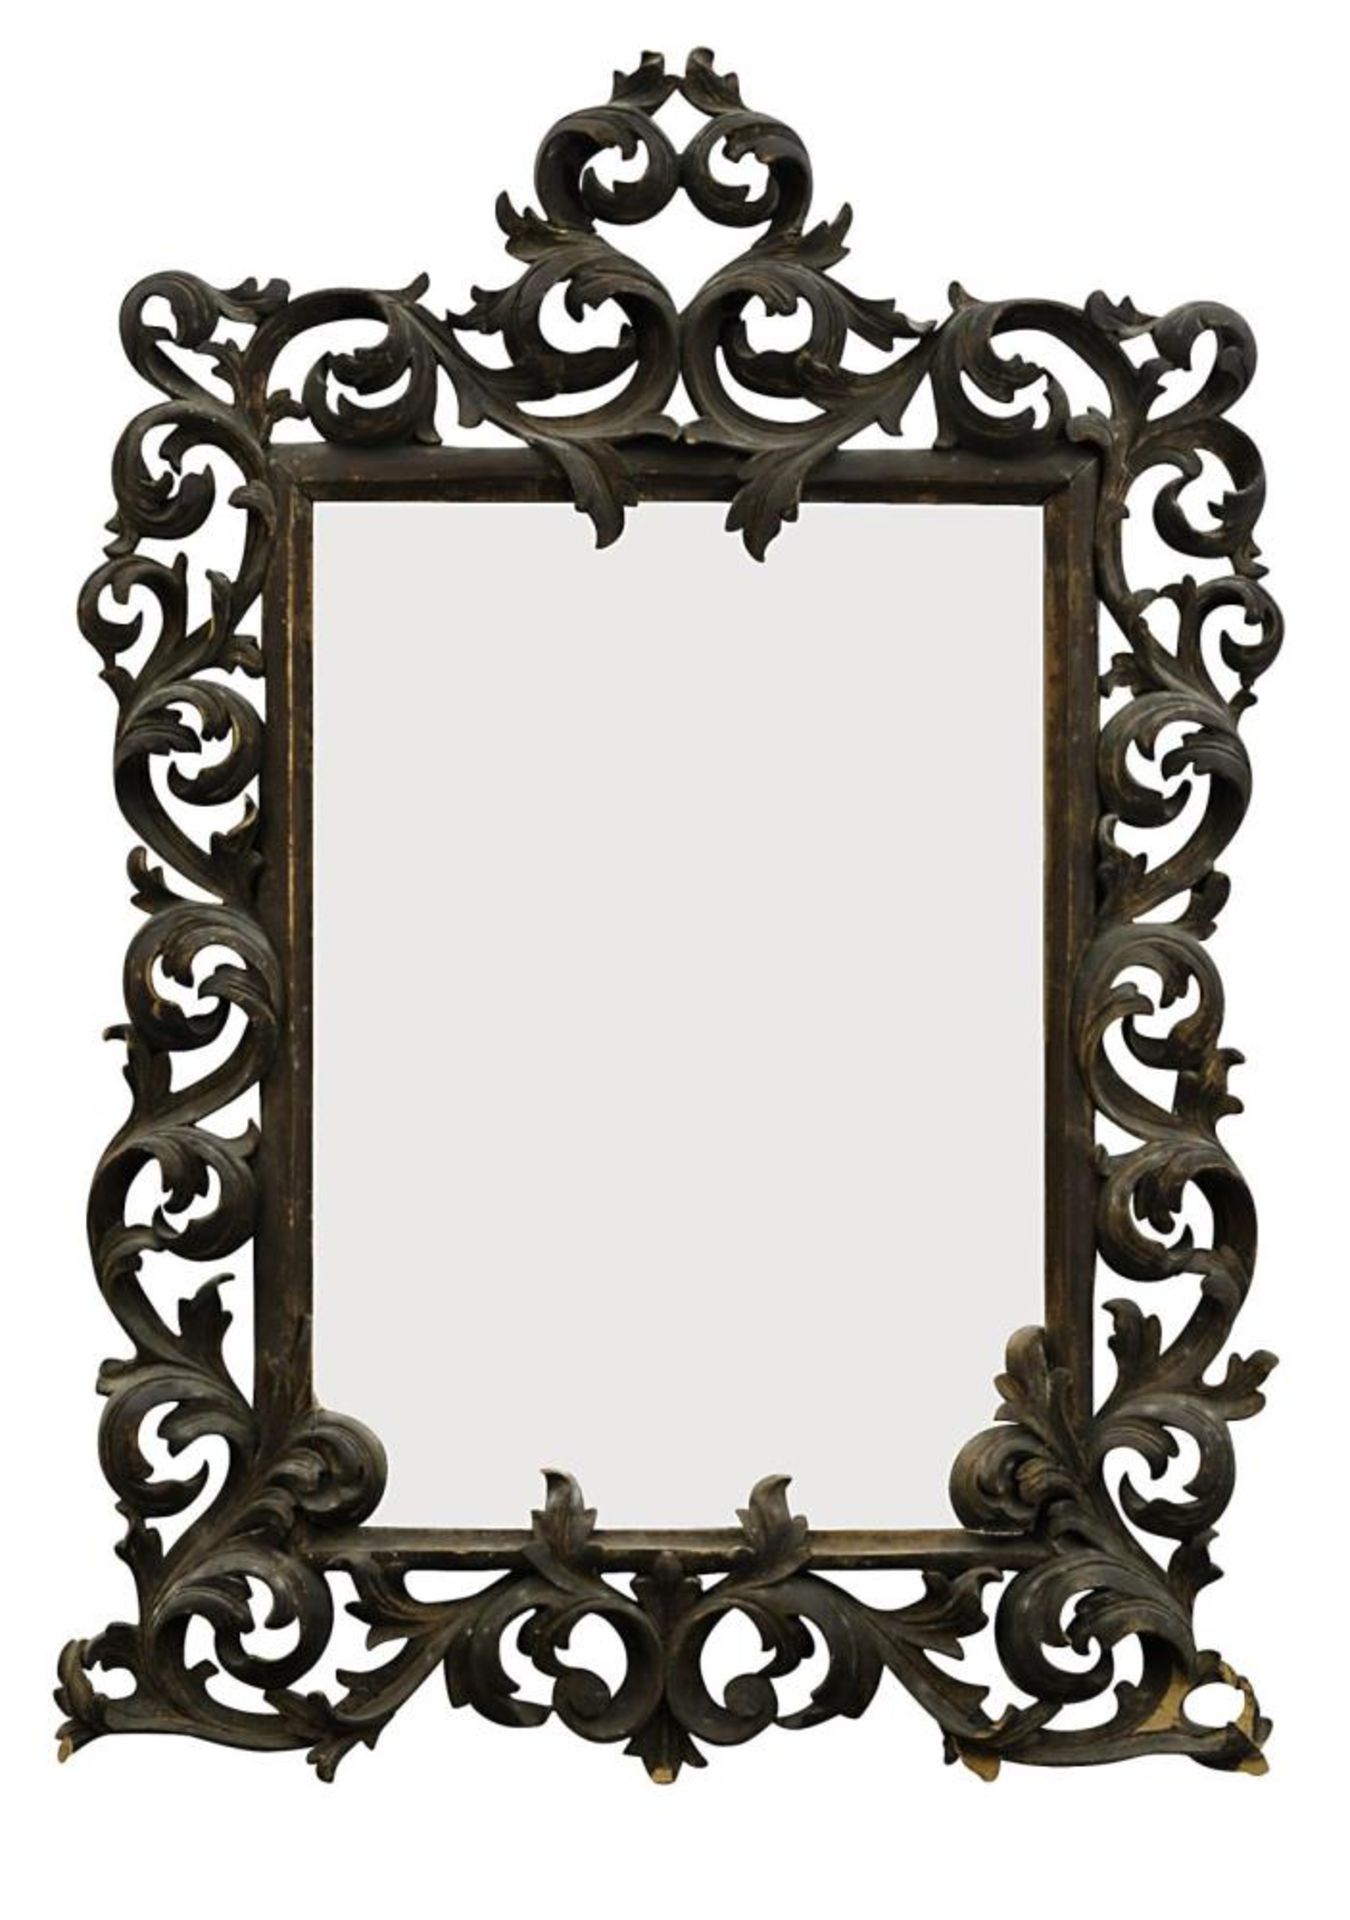 Spiegel. Holz, geschnitzt, dunkelbraun gefasst, Spiegelglas - Bild 2 aus 2